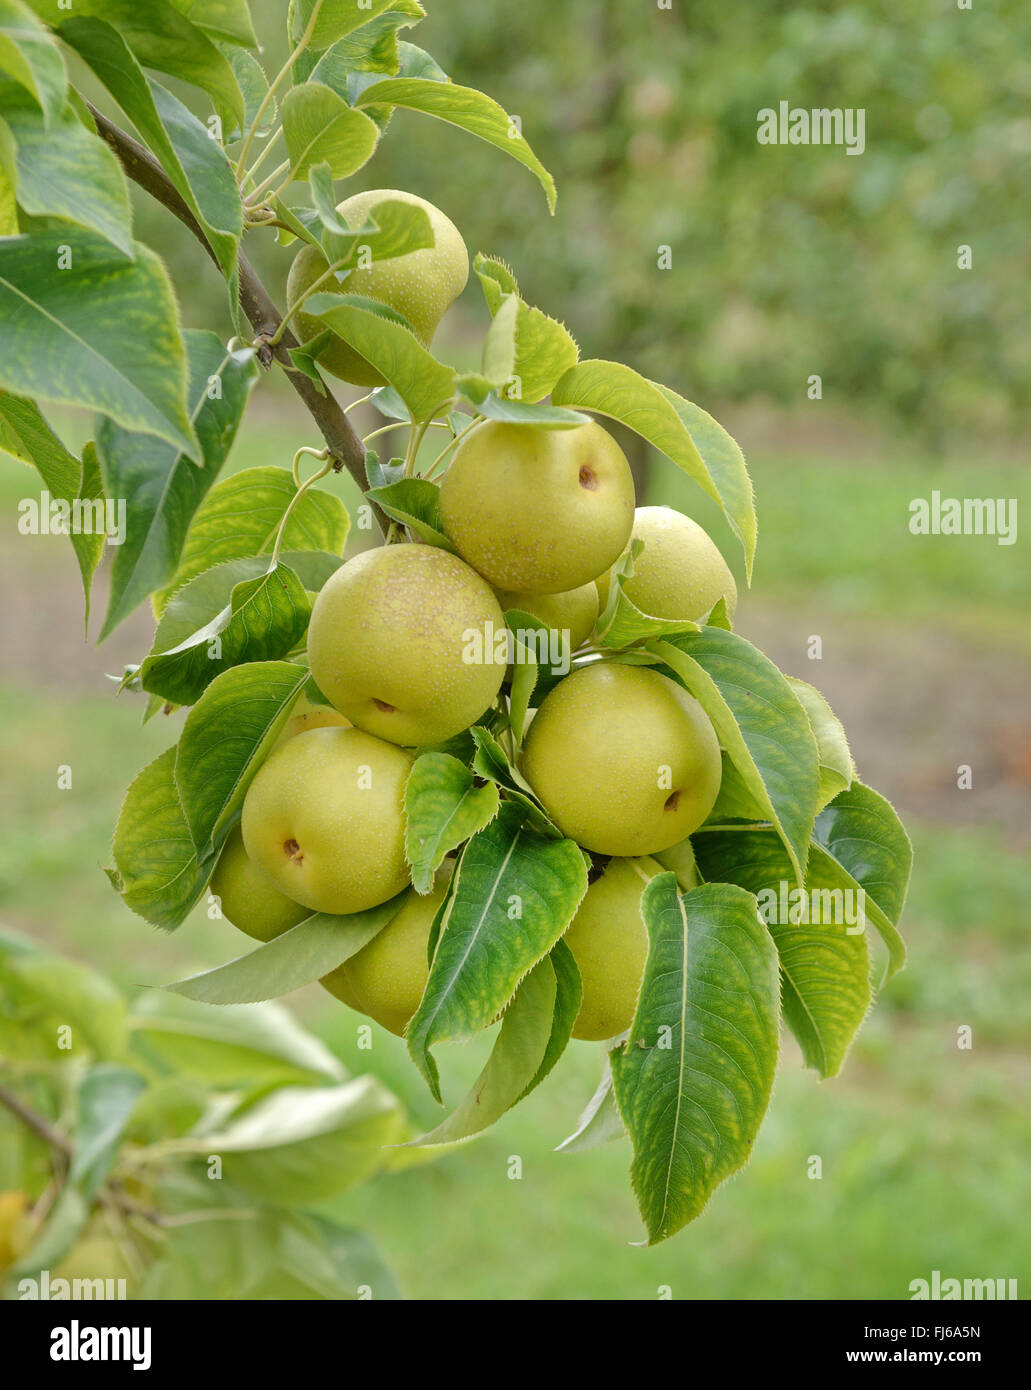 Asien peral (Pyrus pyrifolia "Ben", Pera Pyrus pyrifolia Un Ben pera), peras de un árbol, cultivar un Ben Pera, Alemania Foto de stock